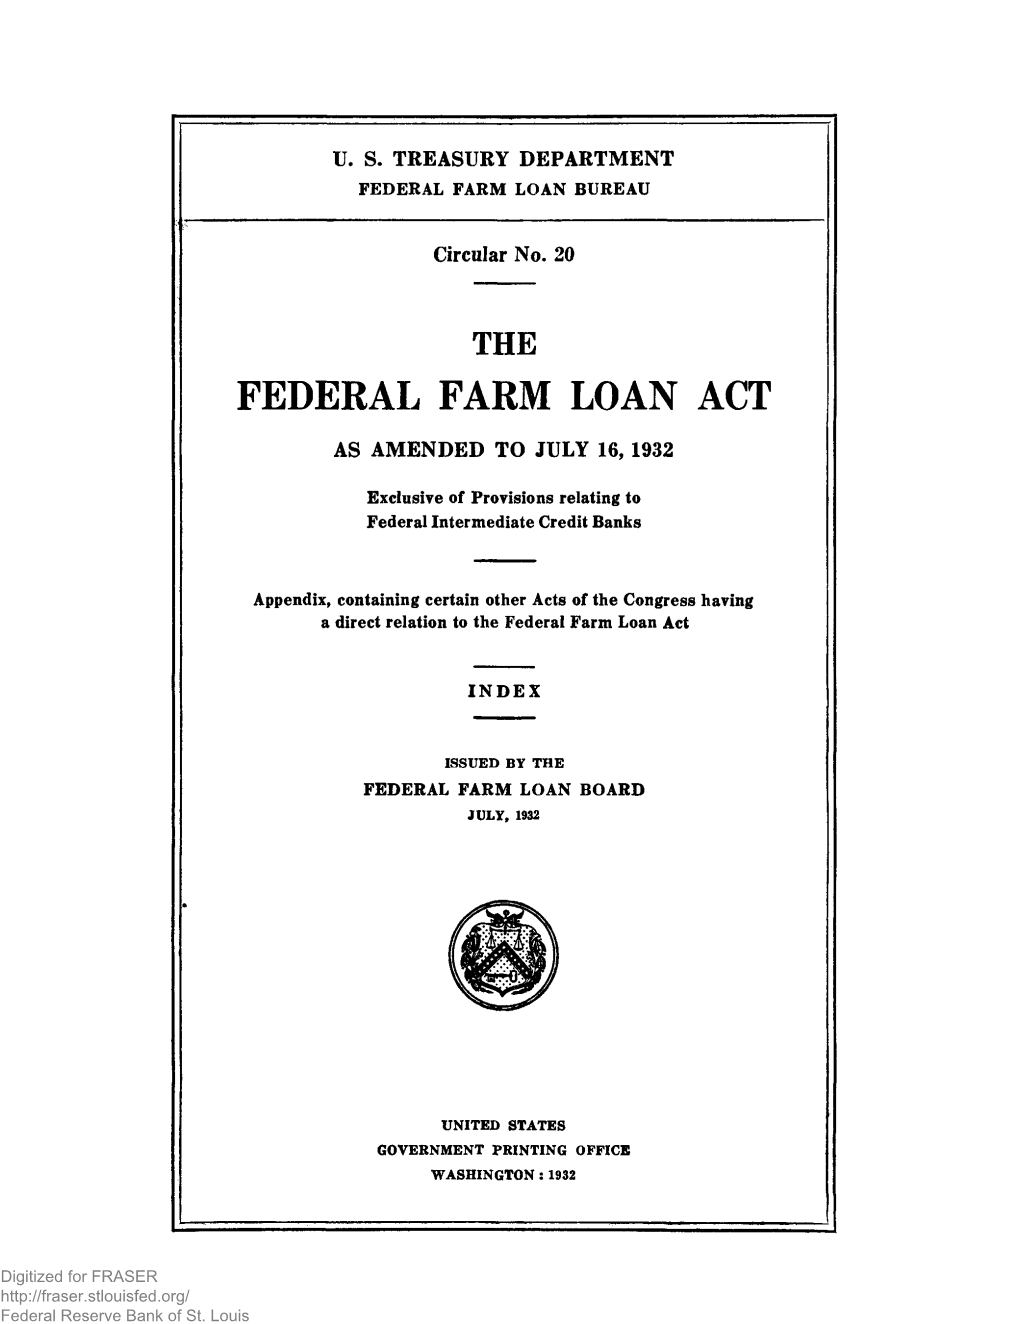 Federal Farm Loan Bureau